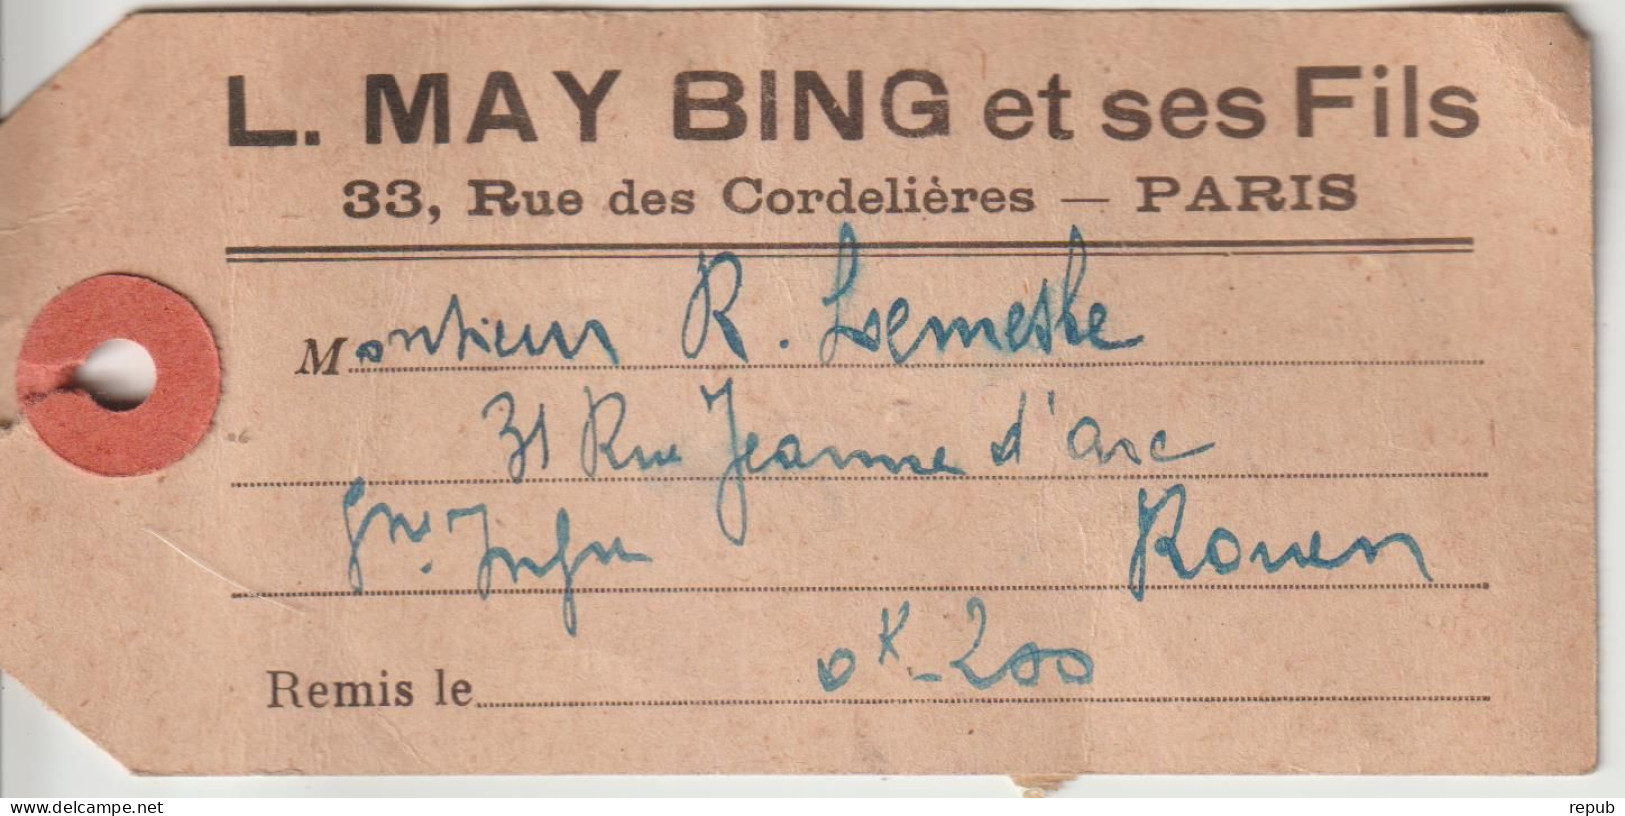 France étiquette De Colis Recommandé 1931 De Paris Pour Rouen - 1921-1960: Periodo Moderno